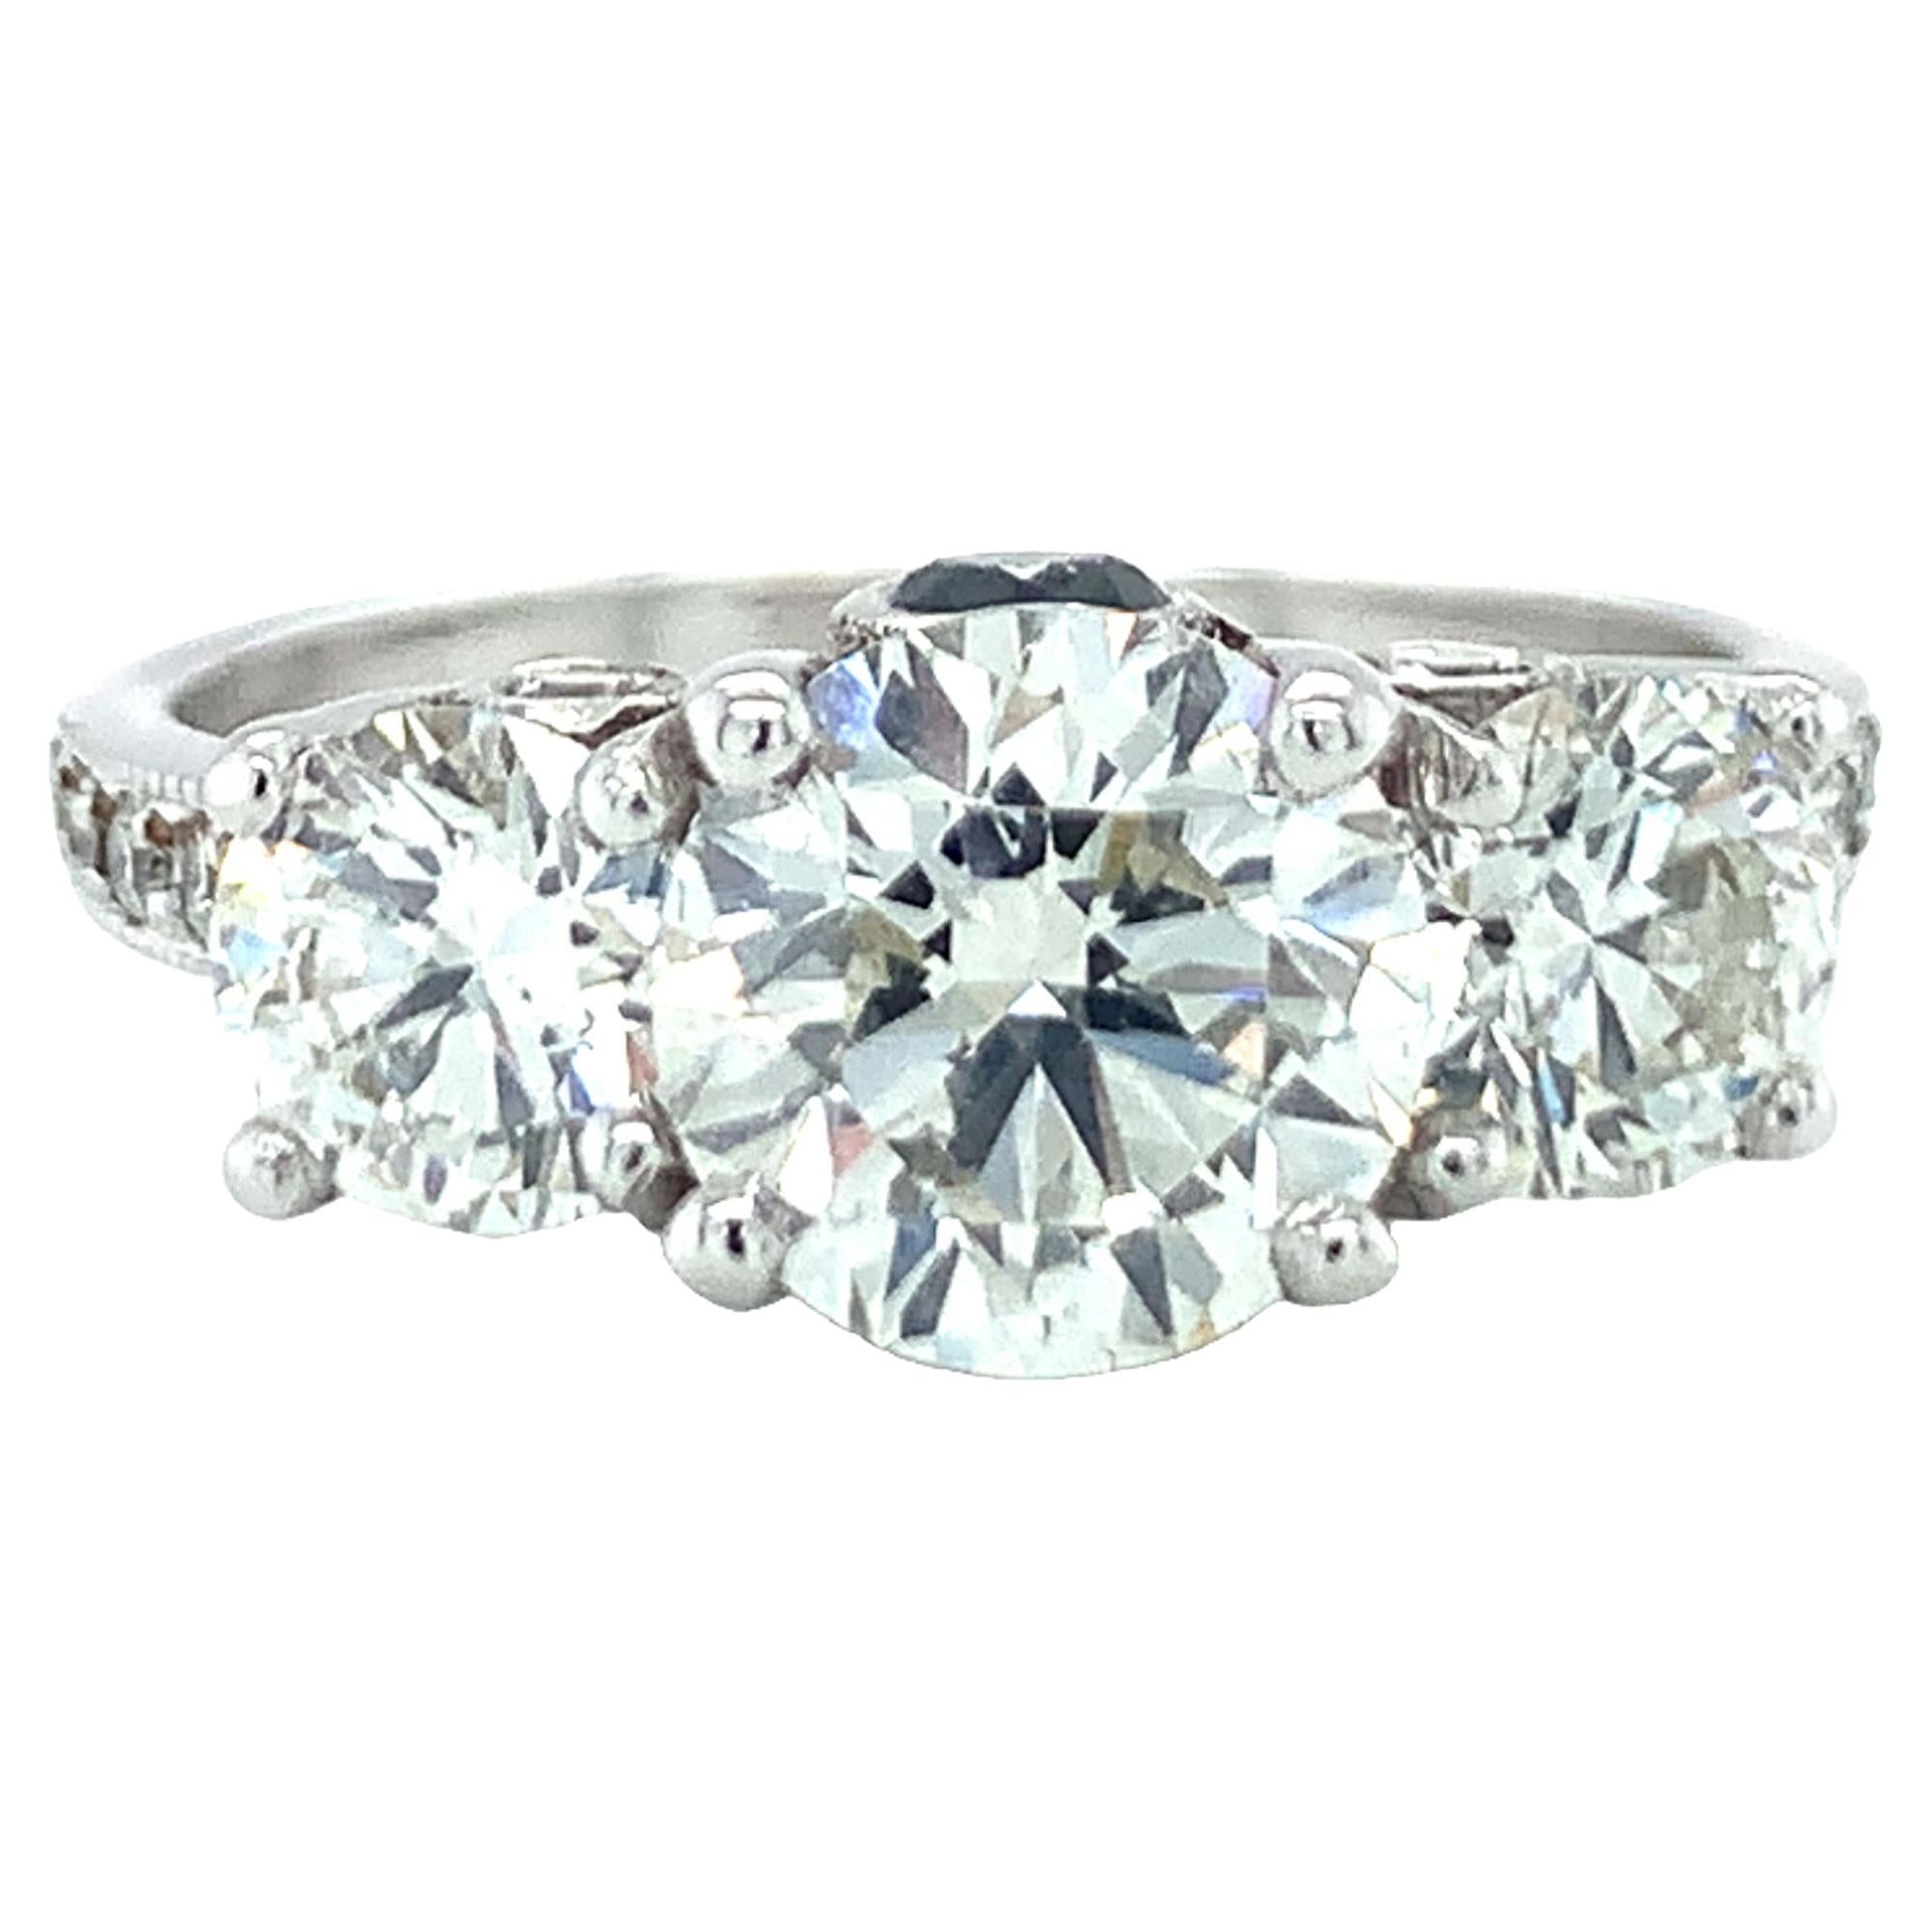 GIA Certified 1.62 Carat Diamond 18K White Gold Engagement Ring